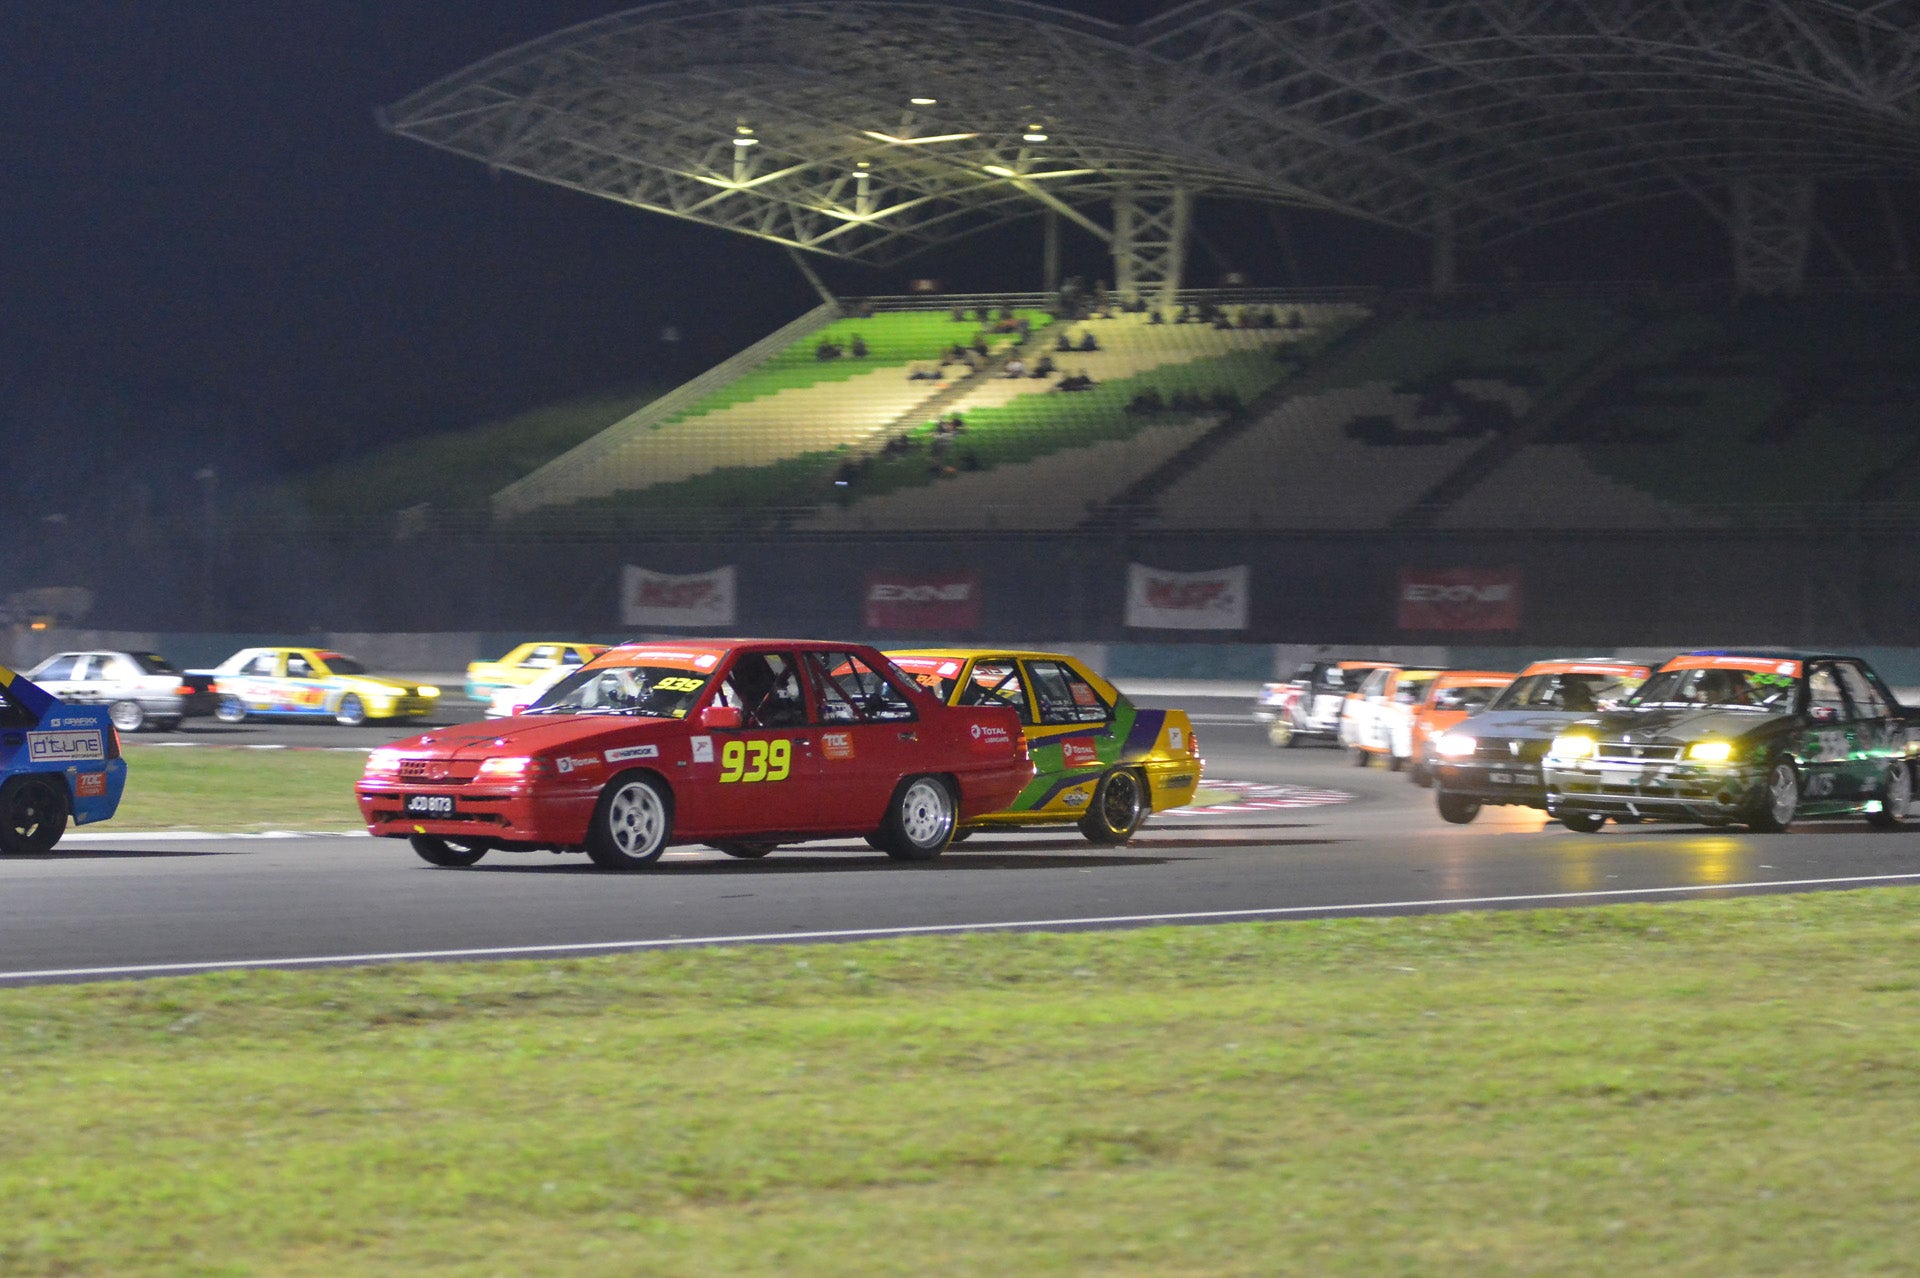 Saga Cup cars negotiating Sepang Circuit's exiting Turn 1